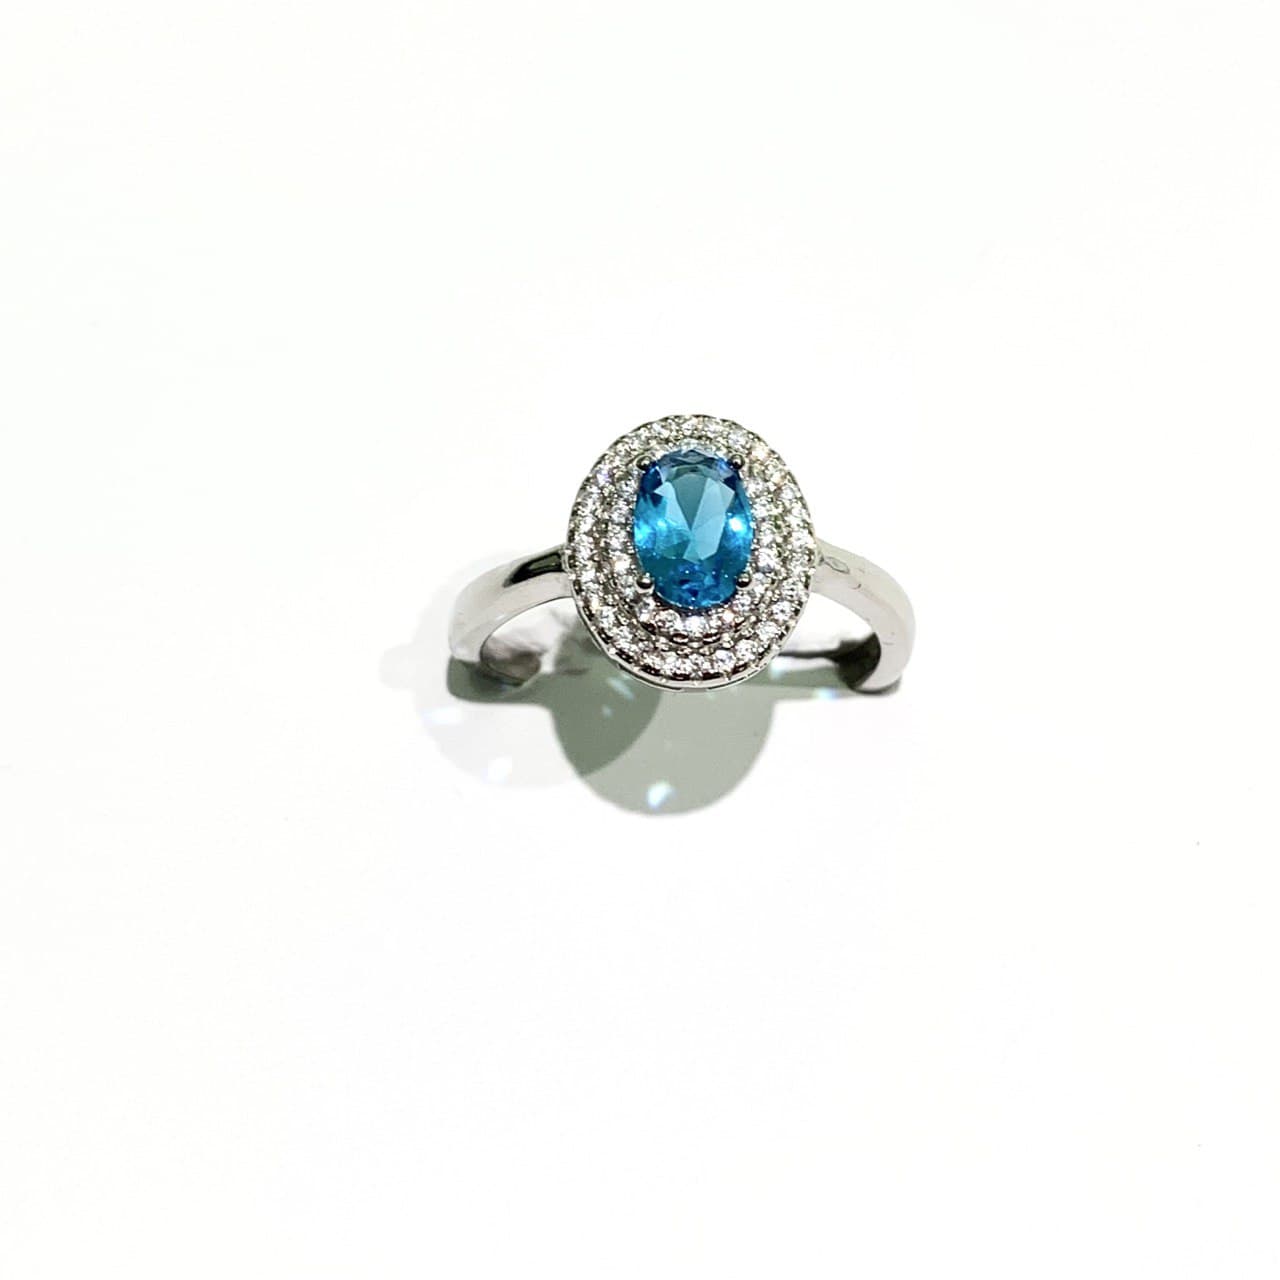 Anello in argento con zircone ovale colorato circondato da due giri di zirconi bianchi.  Disponibile in più colori: rubino, smeraldo, turchese e zaffiro.  Misure regolabili in ogni anello da 17 a 21.